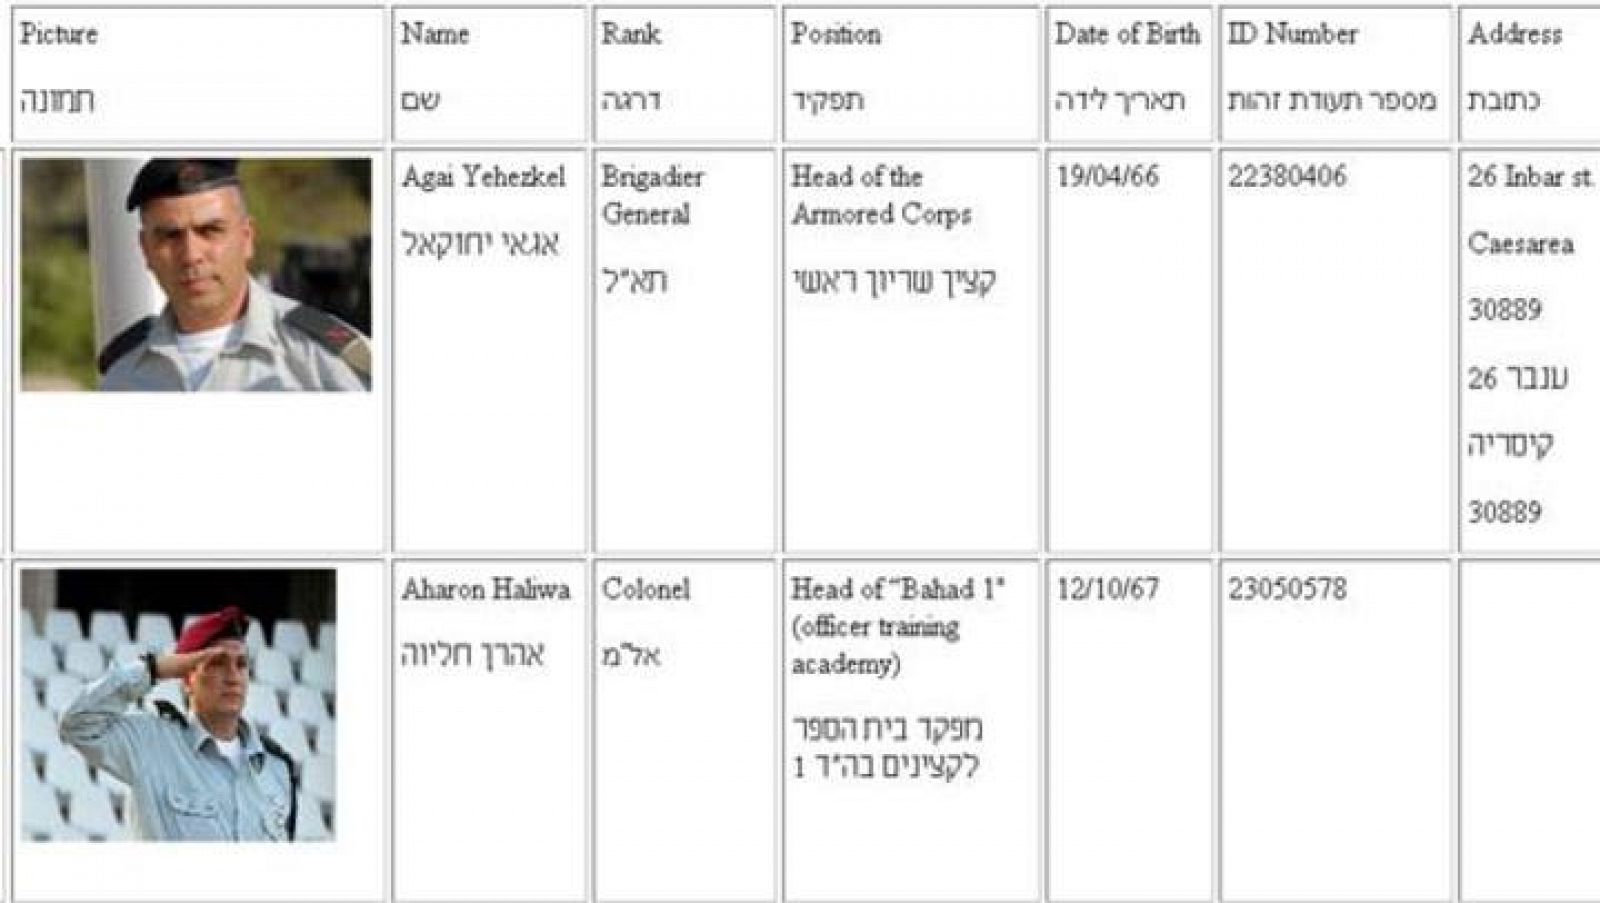 Imagen de la página web que muestra las imágenes de los soldados israelíes que estuvieron en la Guerra de Gaza.